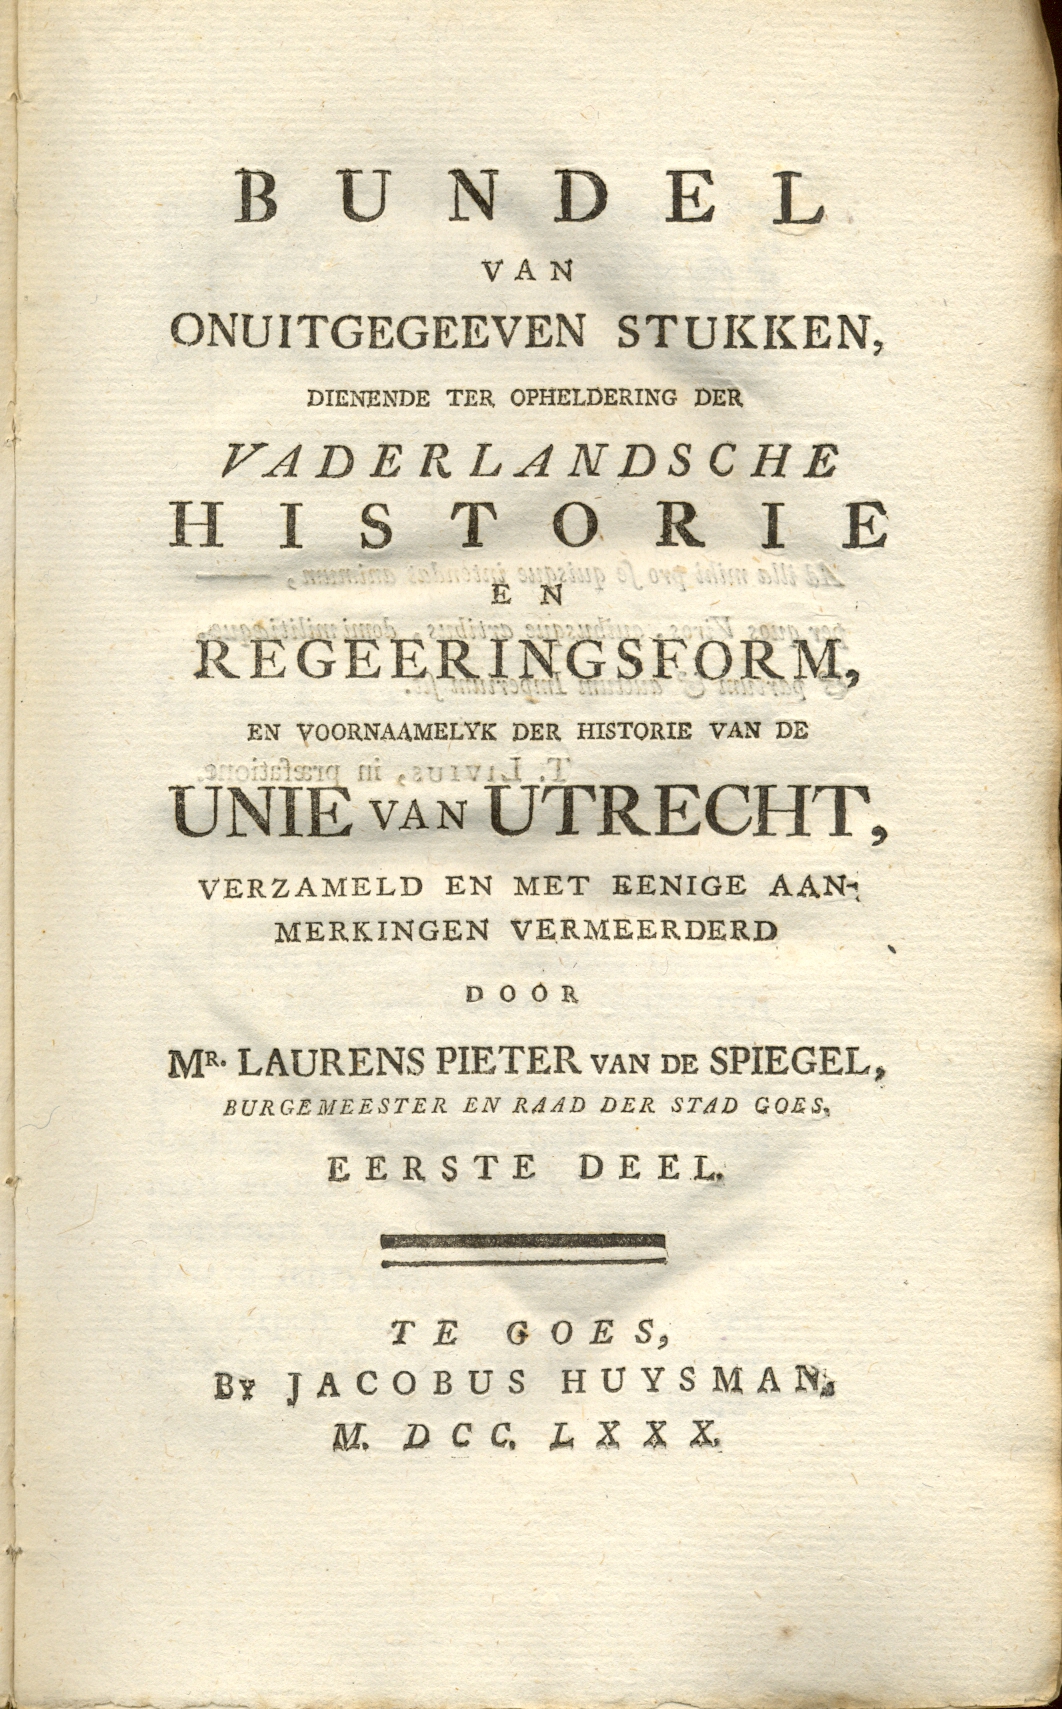 Geschiedkundige publicatie van L.P. van de Spiegel, 1780.